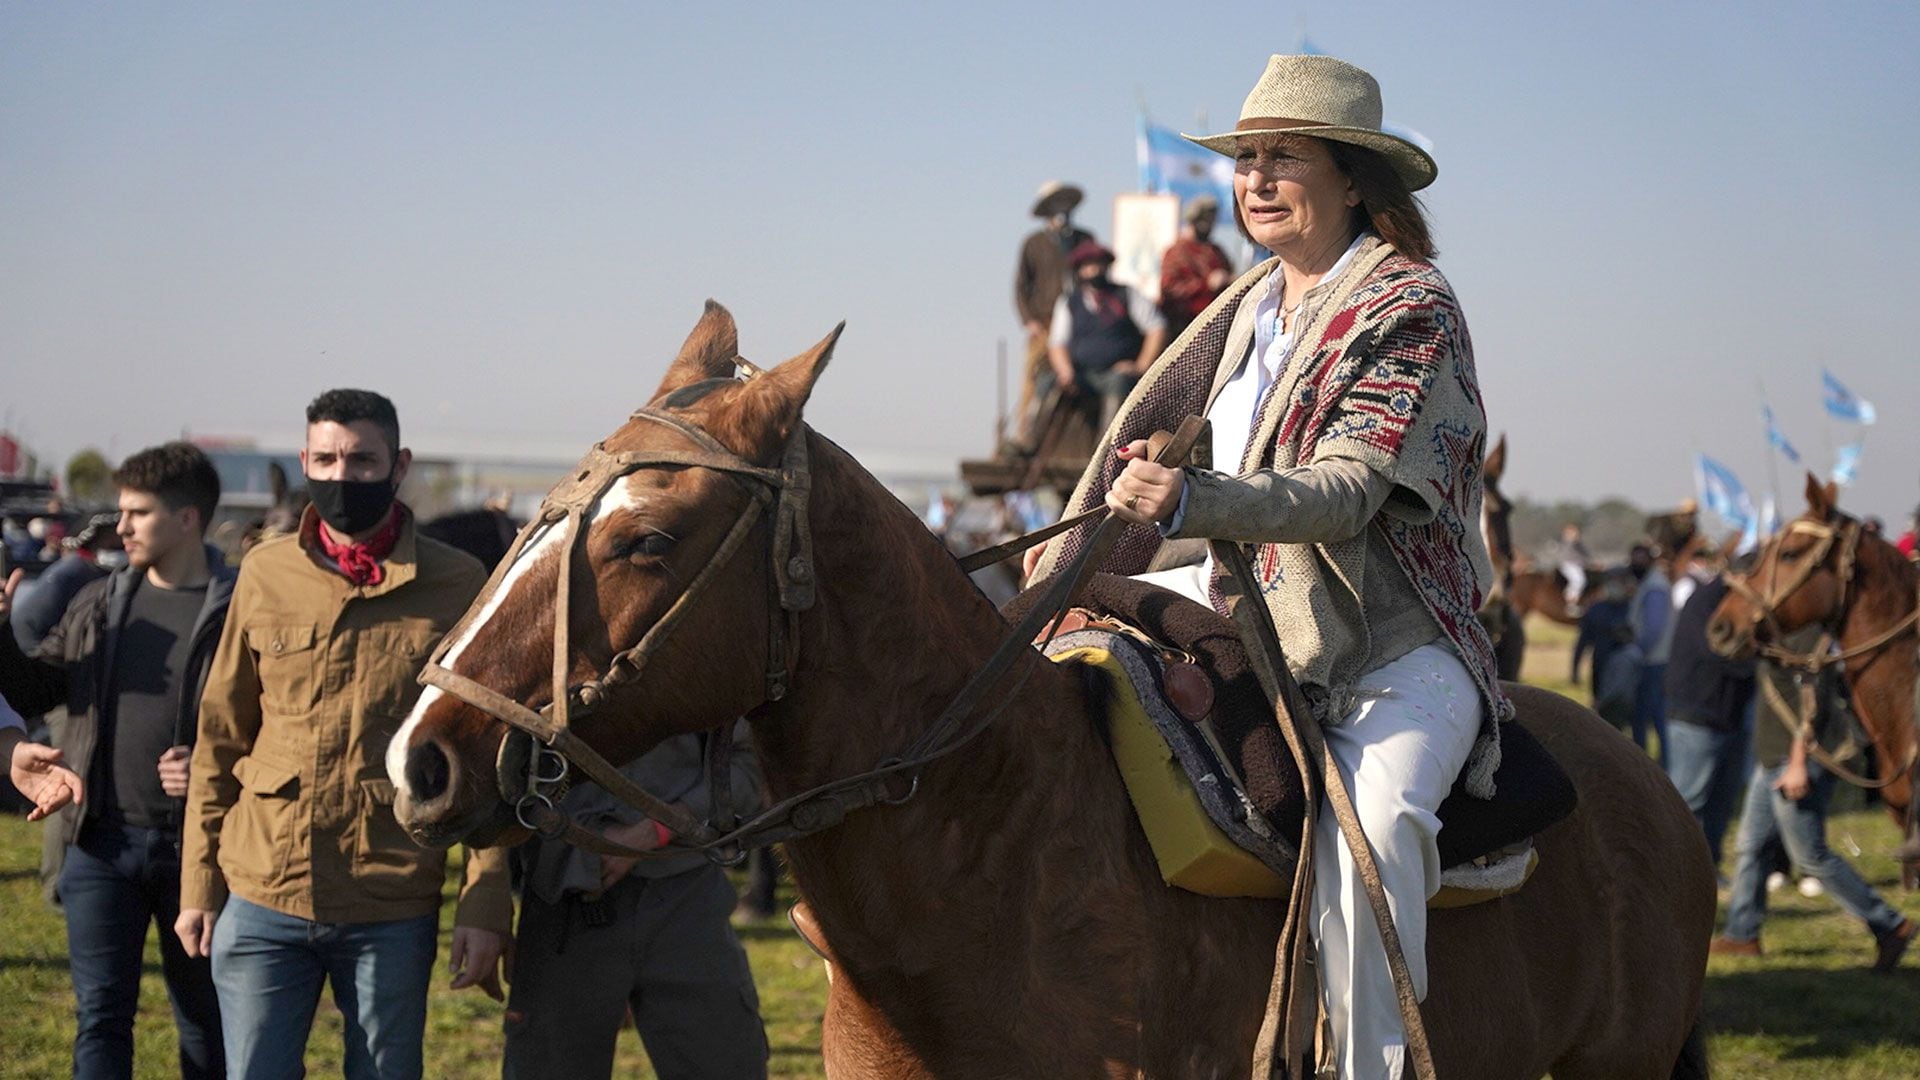 Patricia-Bullrich-caballo en-marcha-protesta-del-campo-hoy-9-de-julio-en-contra-del-gobierno-y-las-importaciones-San-Nicolas